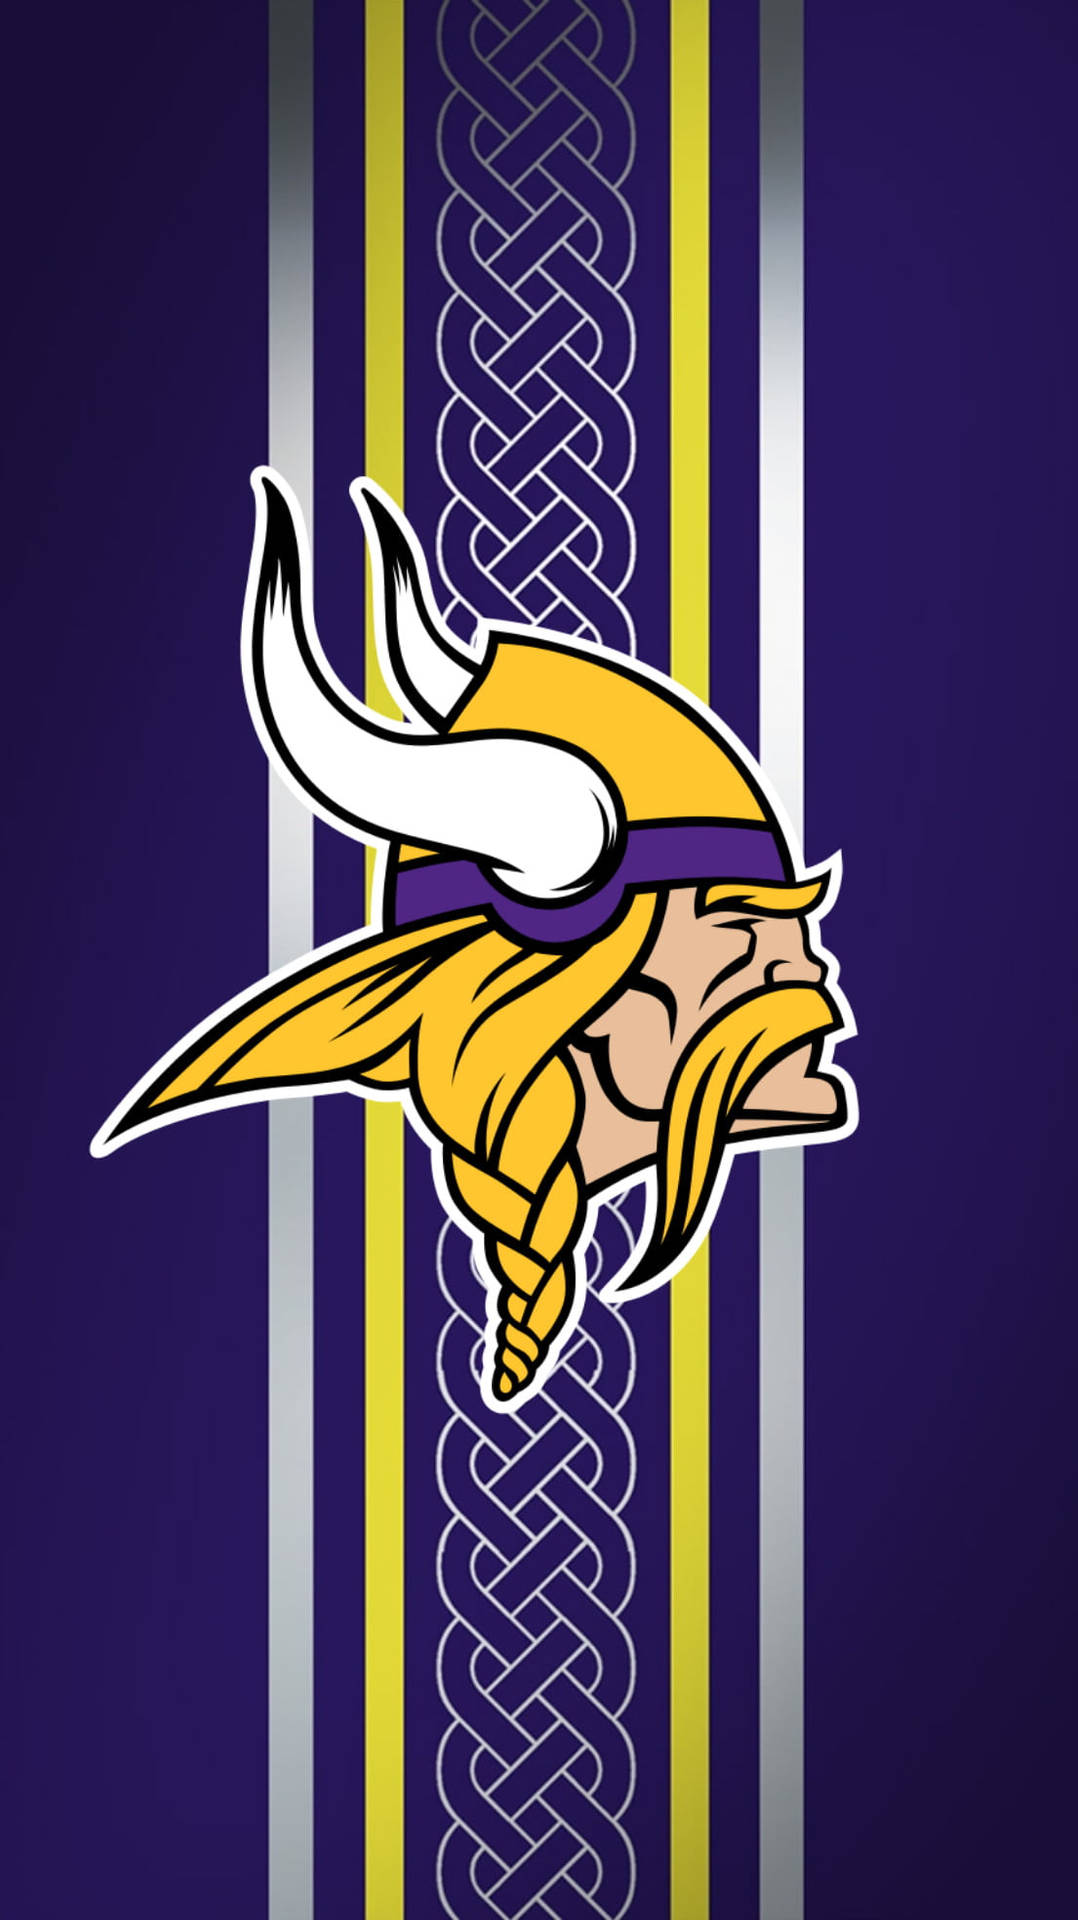 Vikings Nfl Team Logo Wallpaper